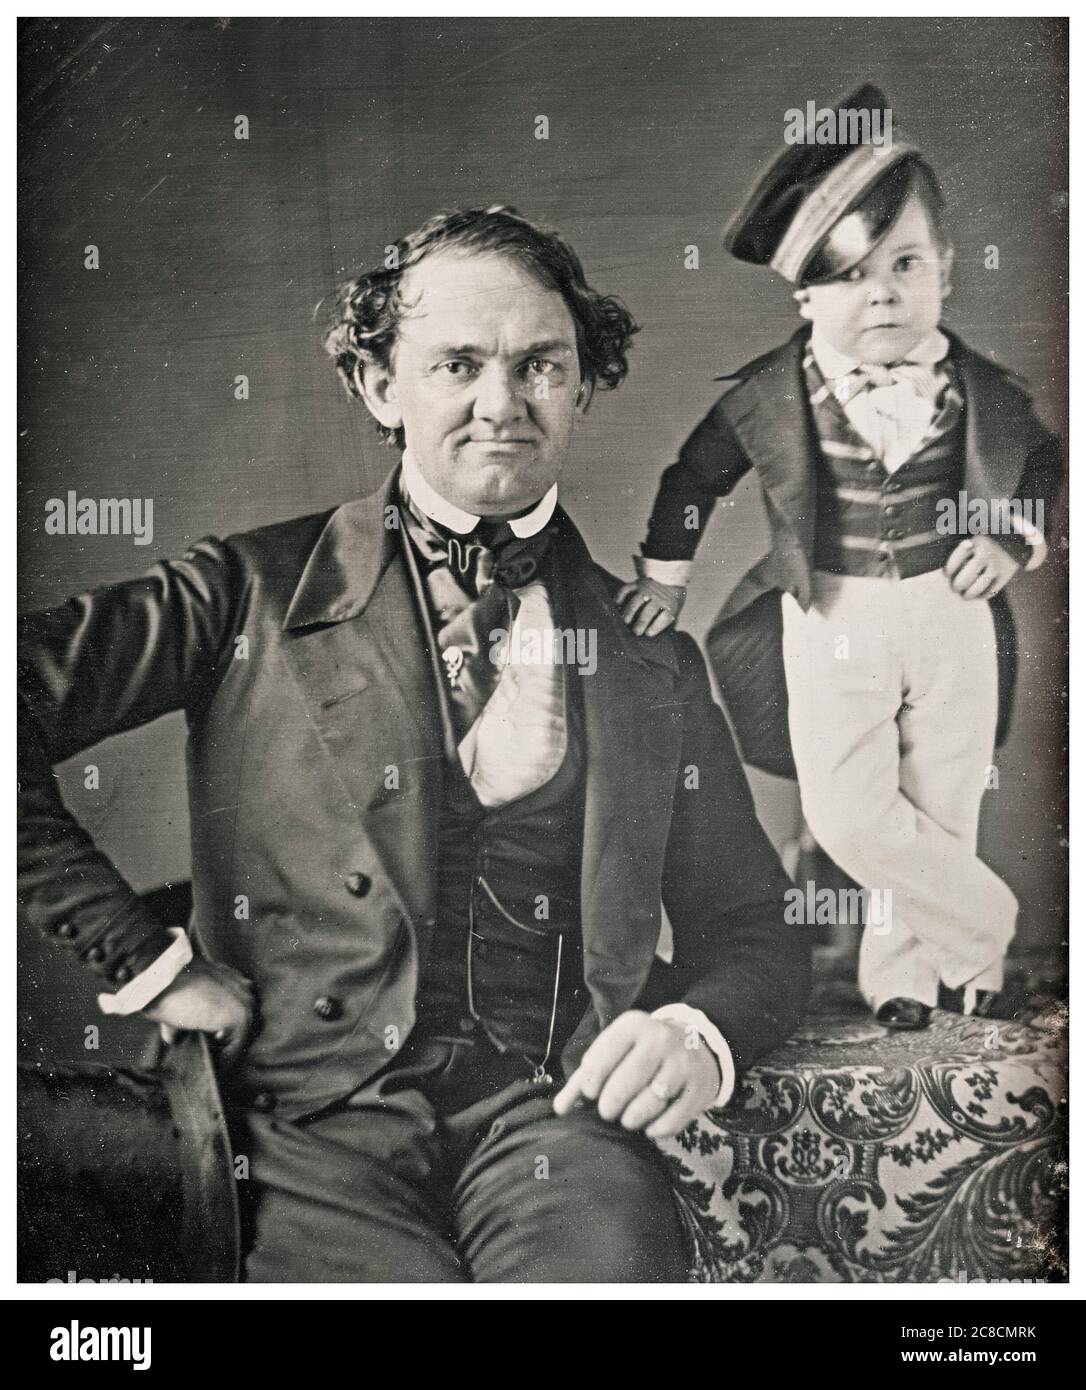 PT Barnum et le général Tom Thumb, photographie de portrait de Marcus Aurelius Root et Samuel Root, vers 1850 Banque D'Images